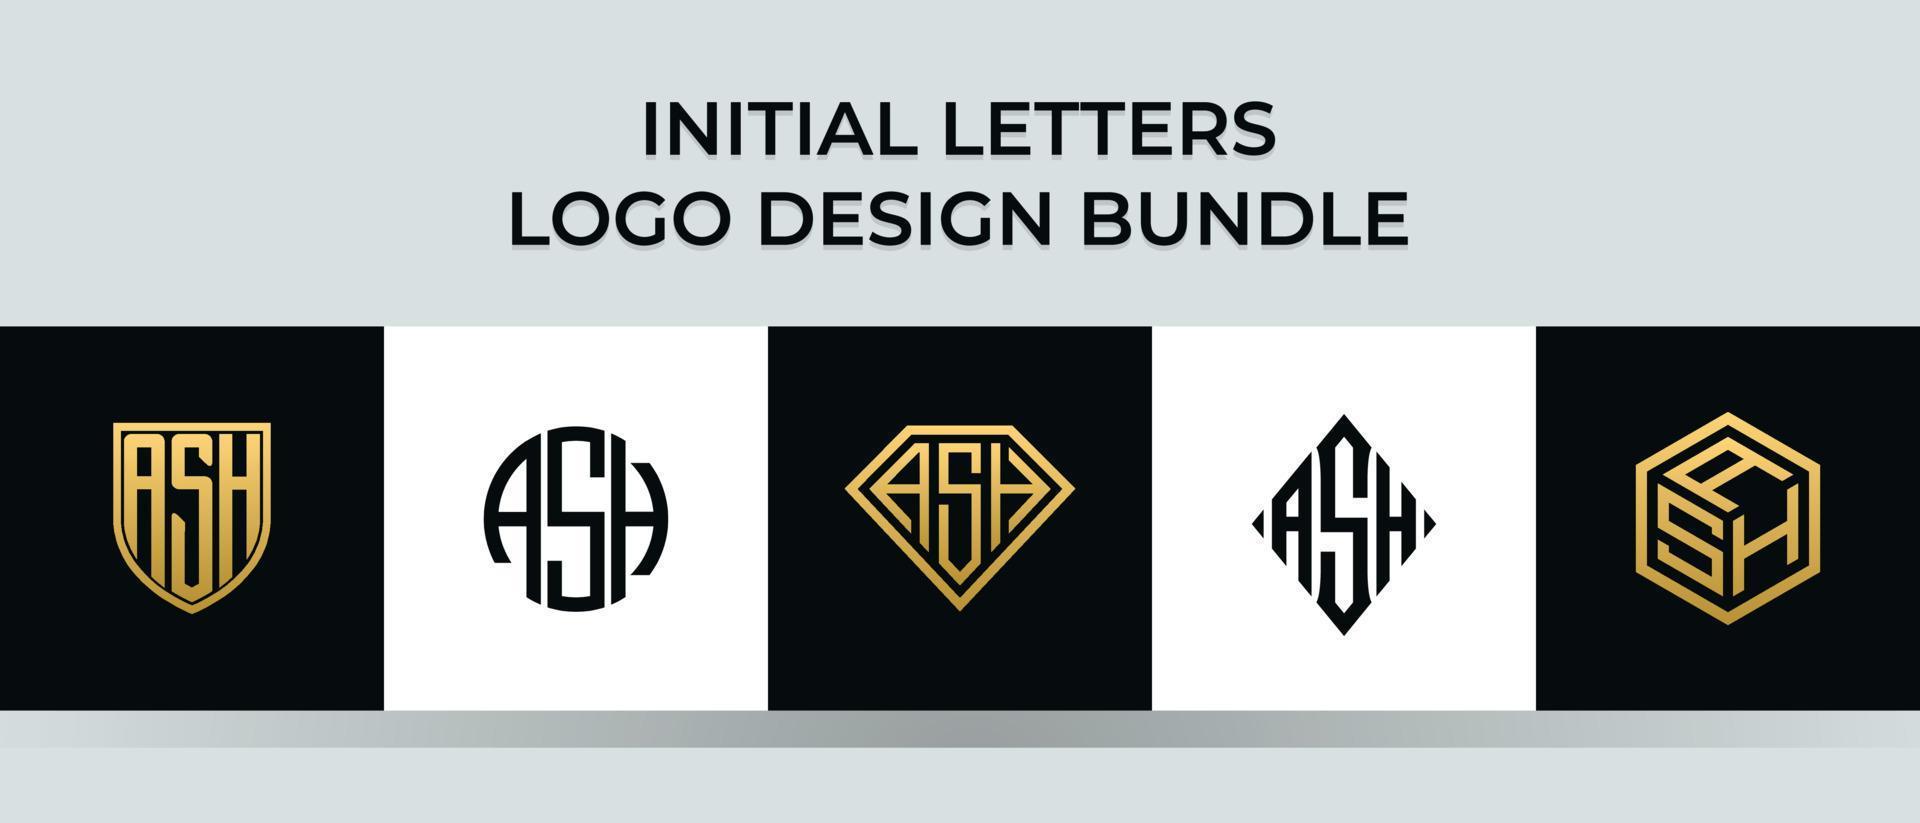 beginletters as logo ontwerpen bundel vector